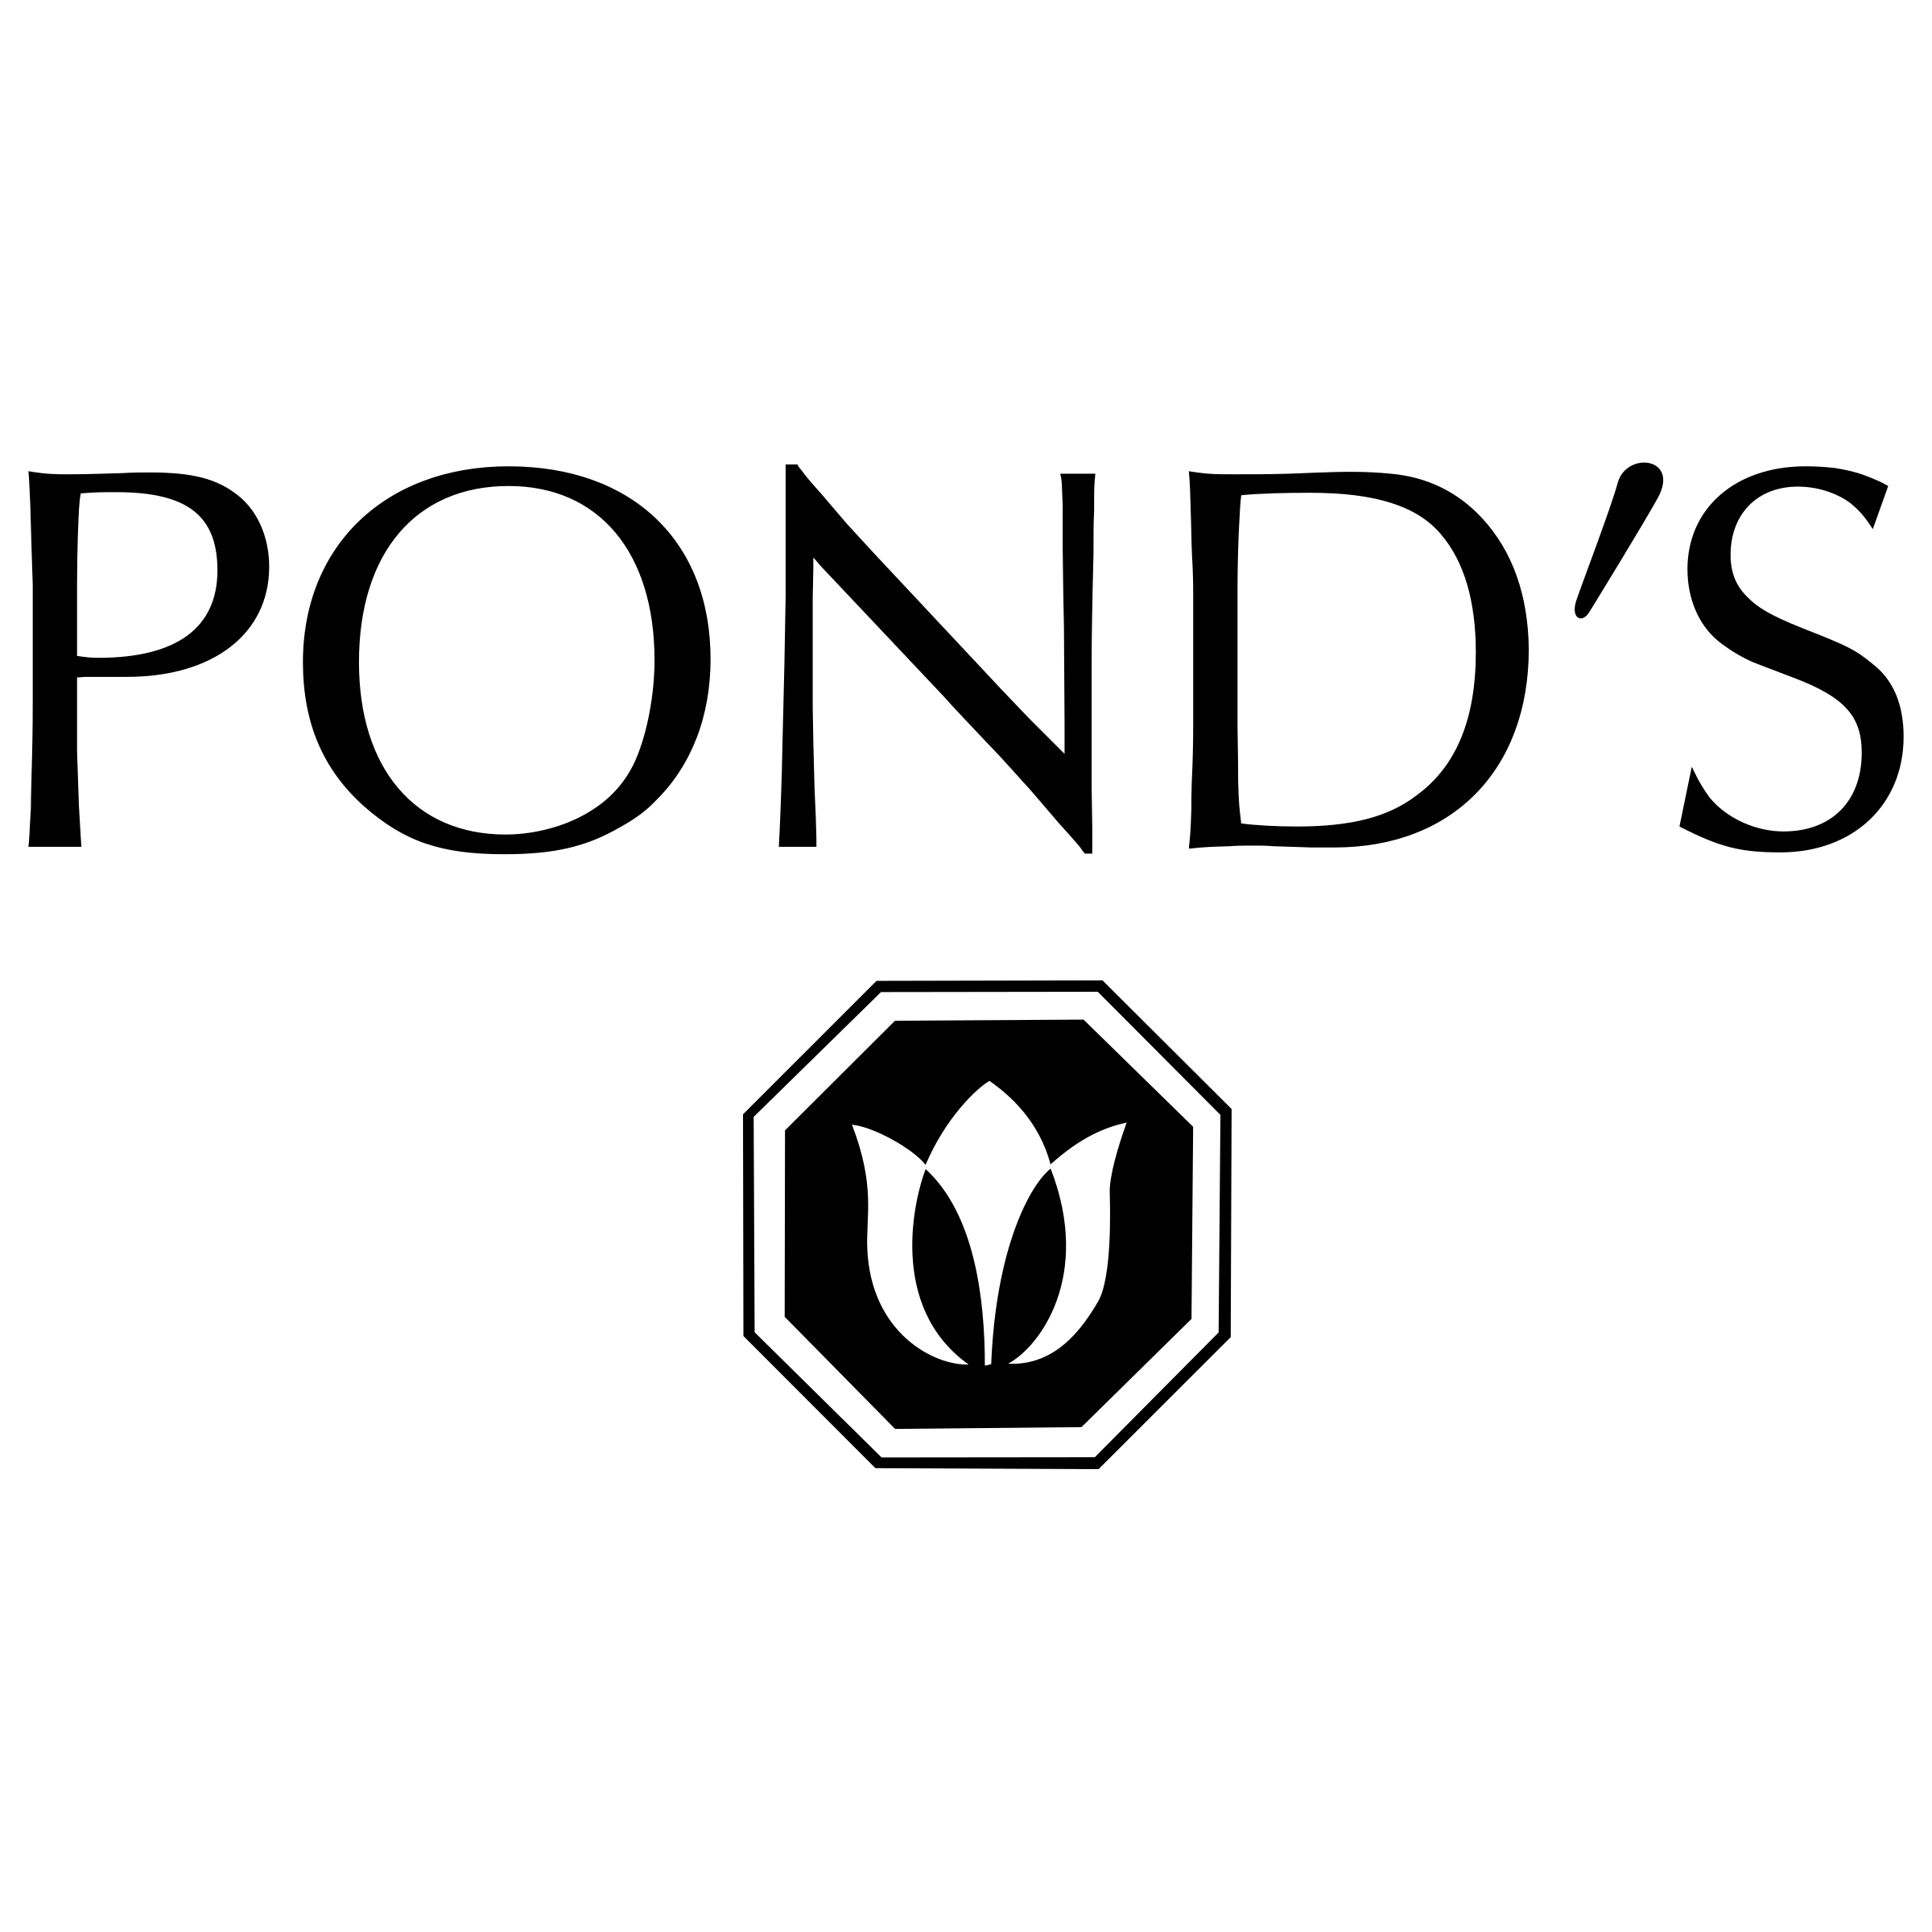 Ponds Logo - Pond's Logo PNG Transparent & SVG Vector - Freebie Supply